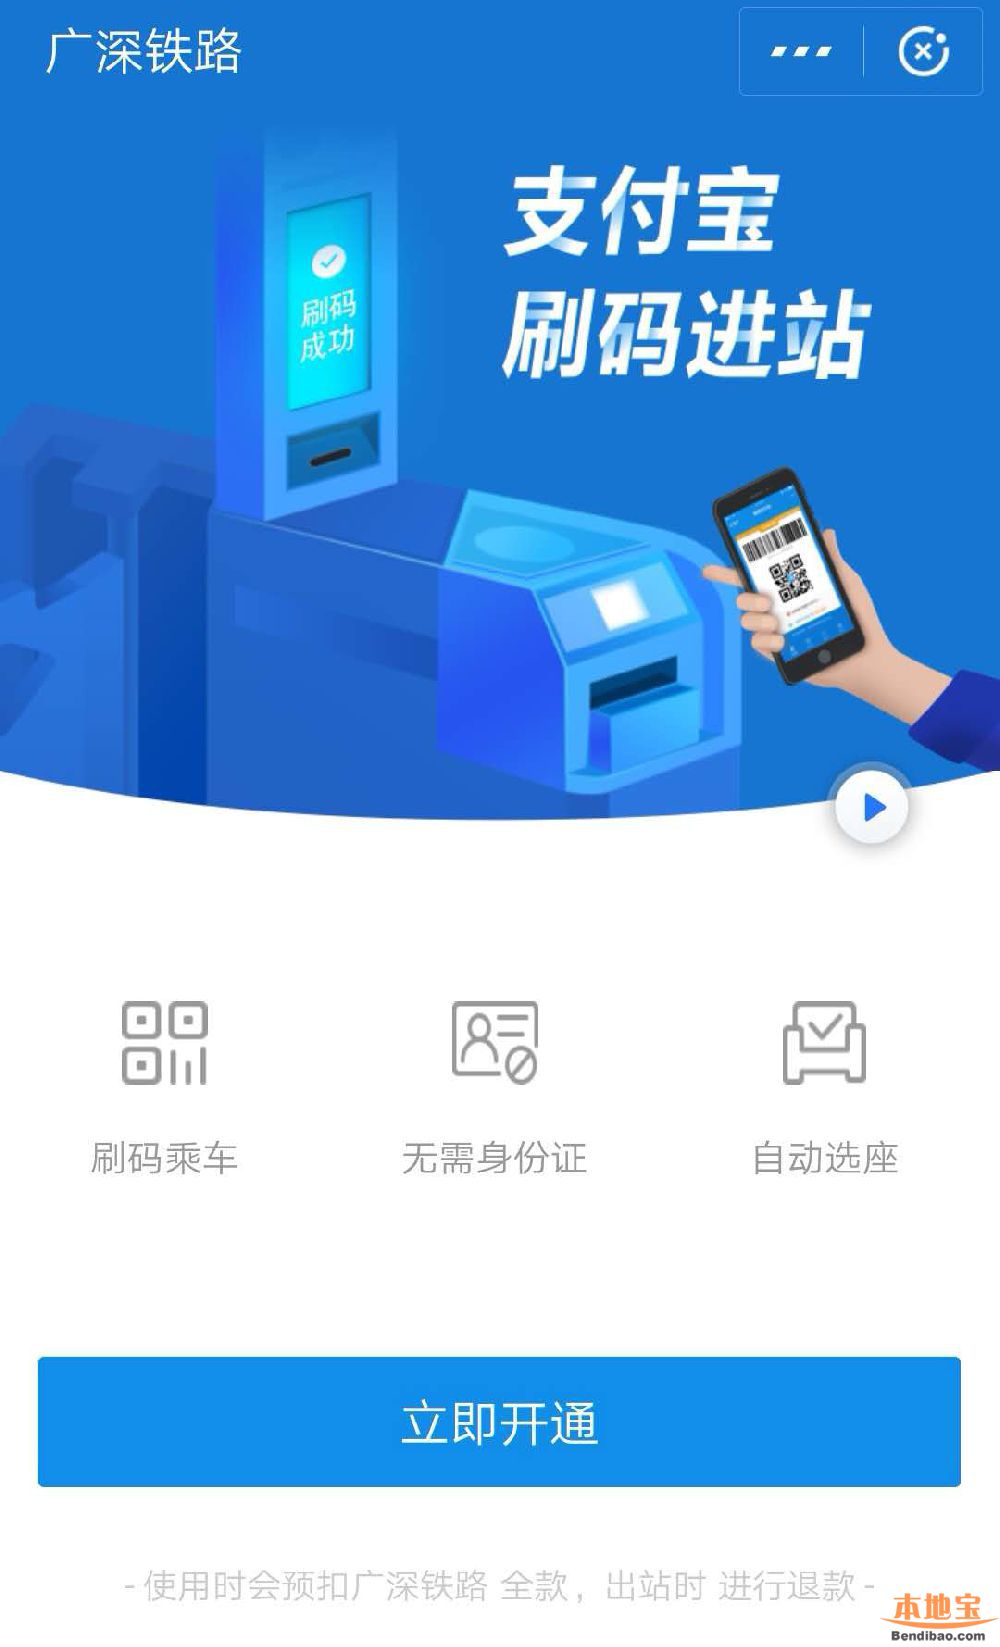 济宁手机靓号2019年1月21日起广深铁路可用支付宝刷码乘车 无需